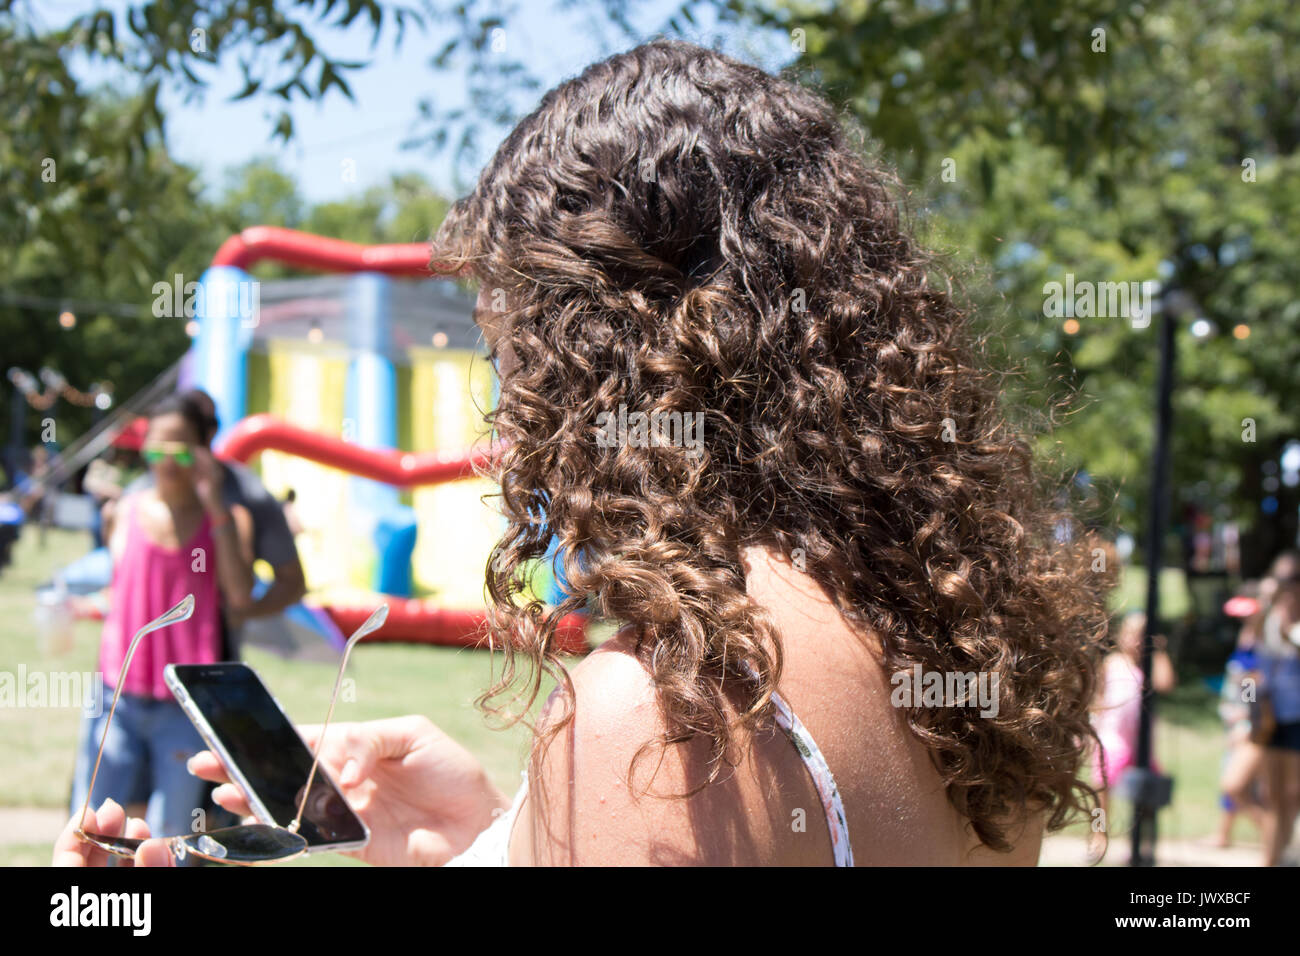 Junge weibliche Erwachsene mit braunen lockigen Haar holding Handy. Ansicht von hinter dem linken Schulter Gesicht hauptsächlich verdeckt werden. Hintergrund verschwommen Outdoor Event. Stockfoto